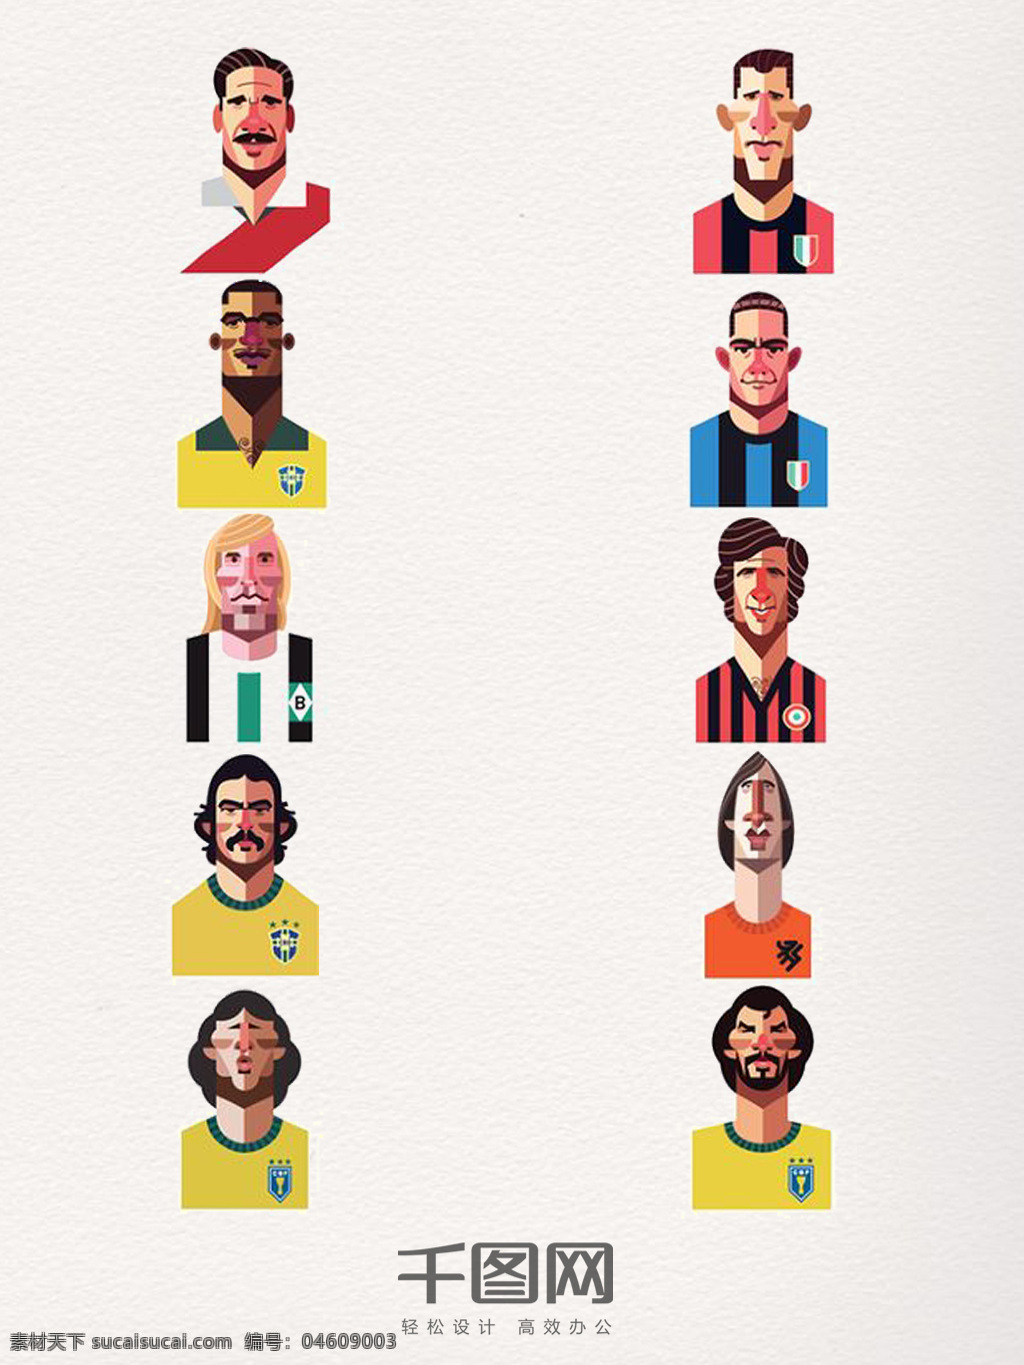 彩色 足球 运动员 头像 国际 足球运动 世界足球日 抽象 雕塑感 体育运动 手绘